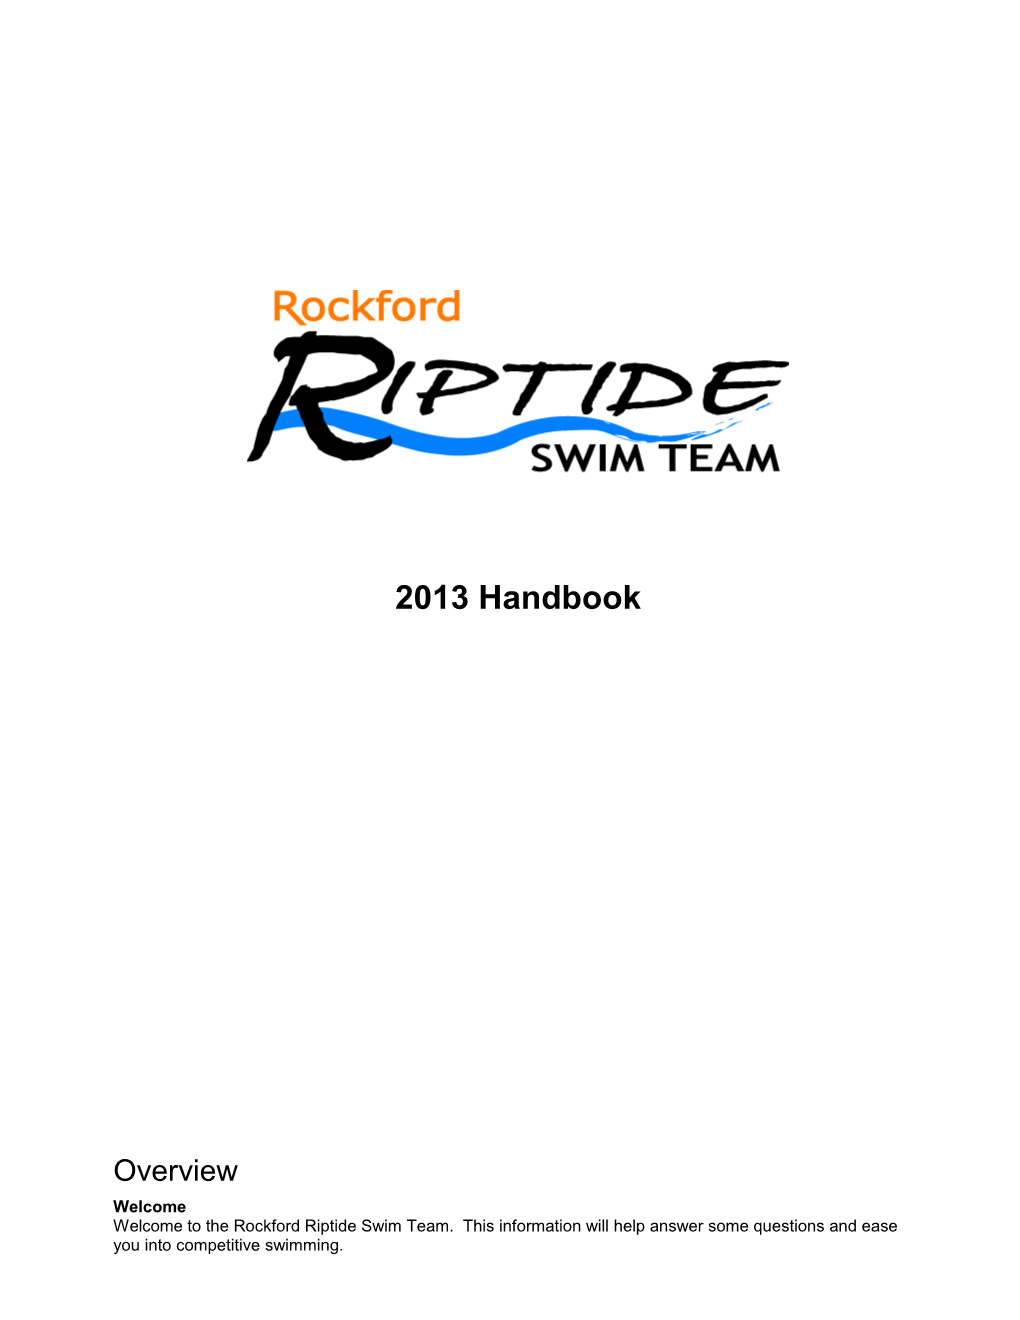 Rockford Riptide Swim Team Handbook